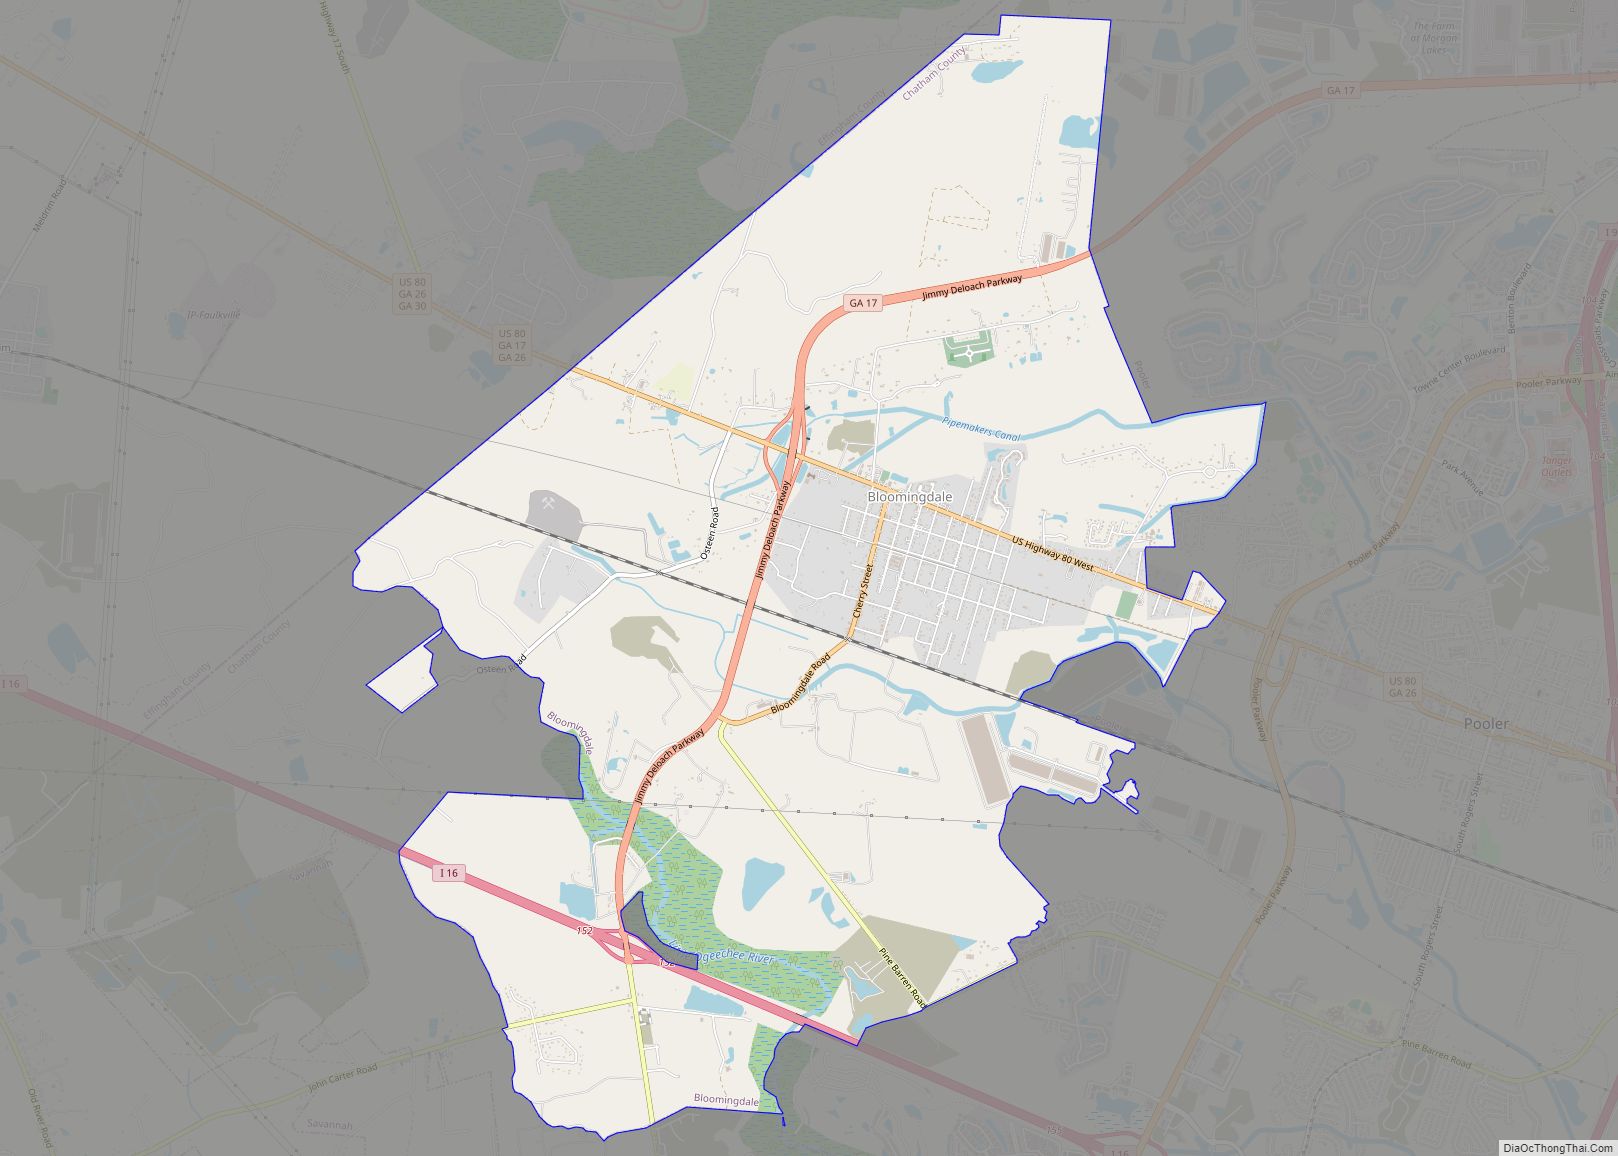 Map of Bloomingdale city, Georgia